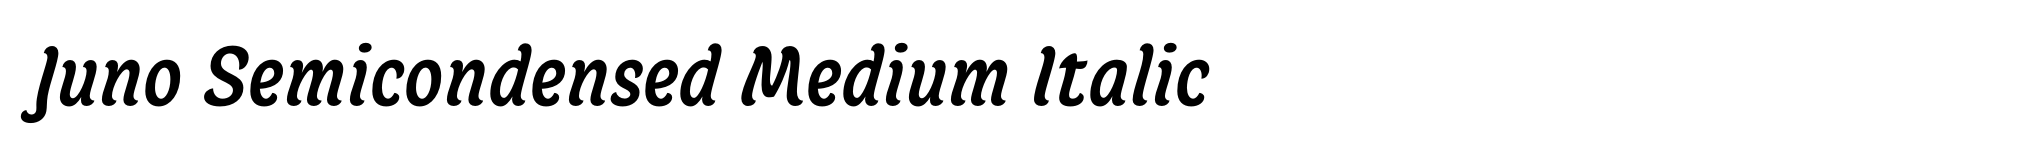 Juno Semicondensed Medium Italic image